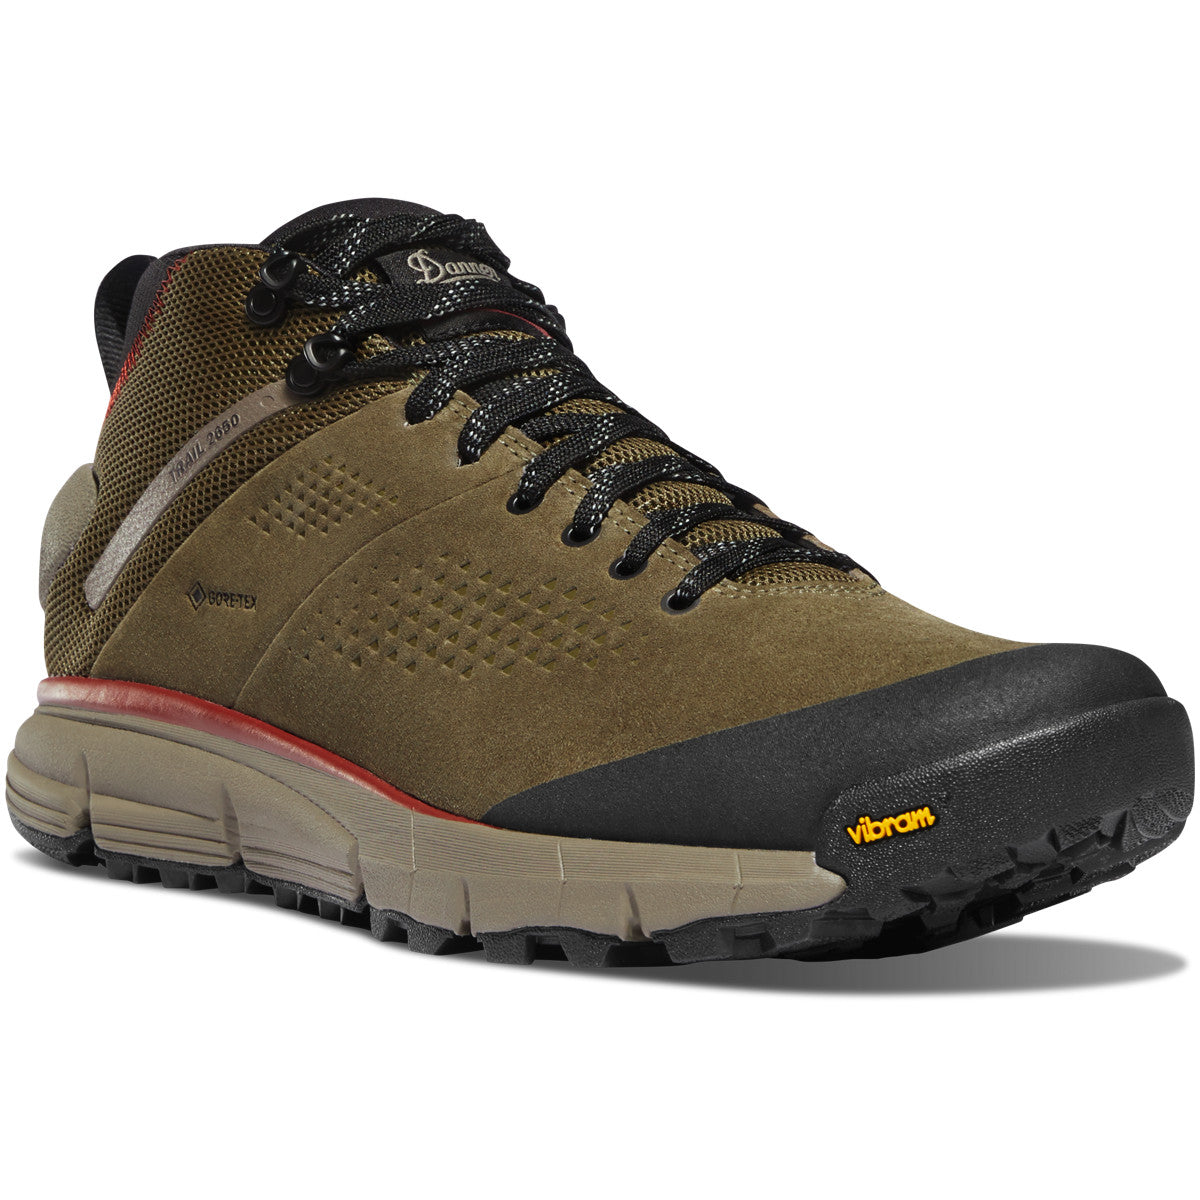 Danner Trail 2650 Mid GTX-FOOTWEAR-Dusty Olive-9D-Kevin's Fine Outdoor Gear & Apparel